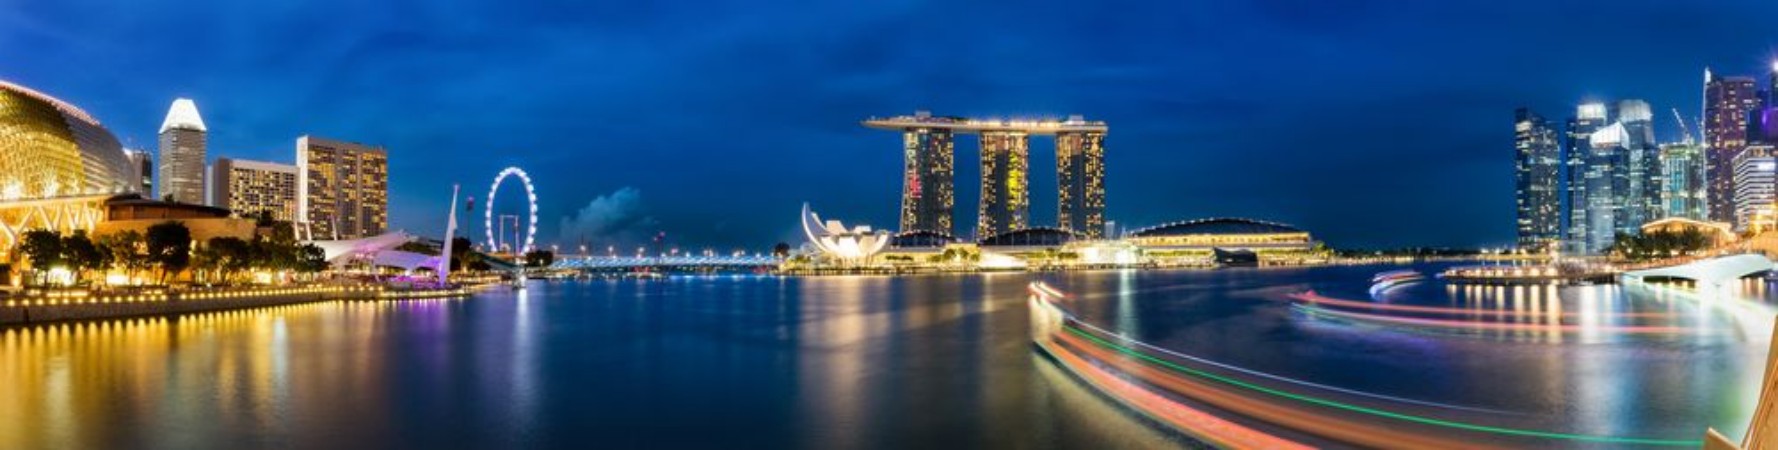 Picture of Singapur Marina und Skyline am Abend